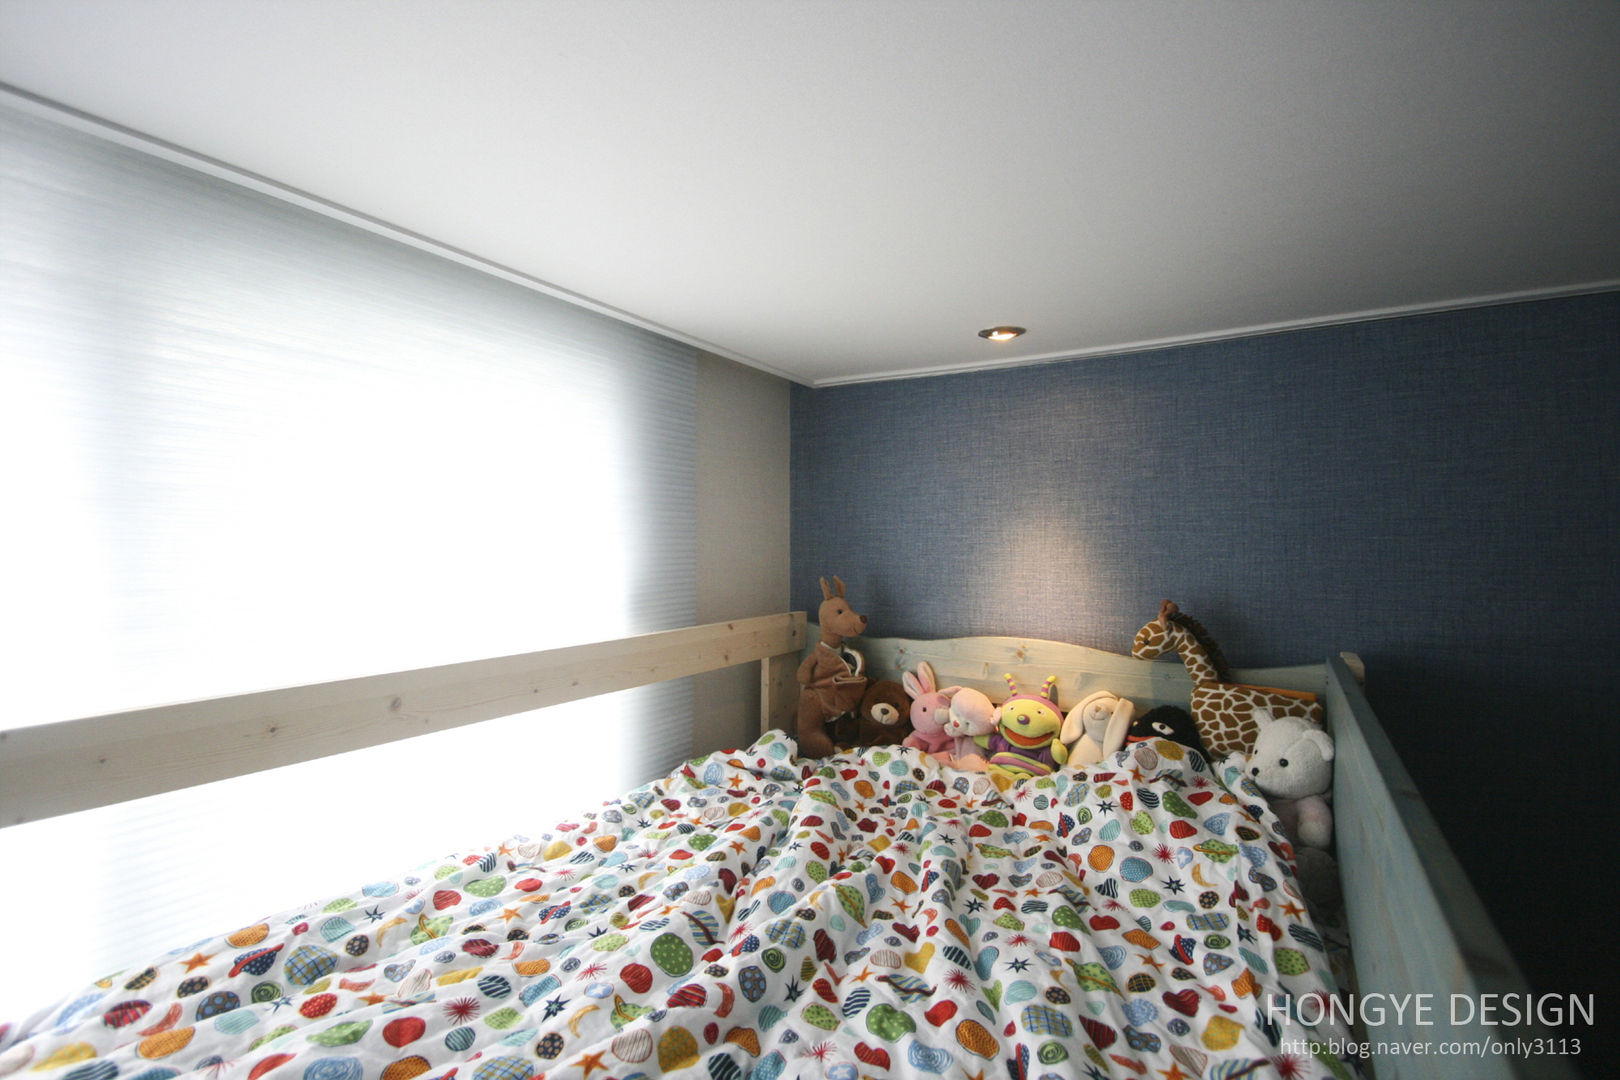 아이셋과 부모님이 함께 사는 집_48py, 홍예디자인 홍예디자인 ห้องนอนเด็ก